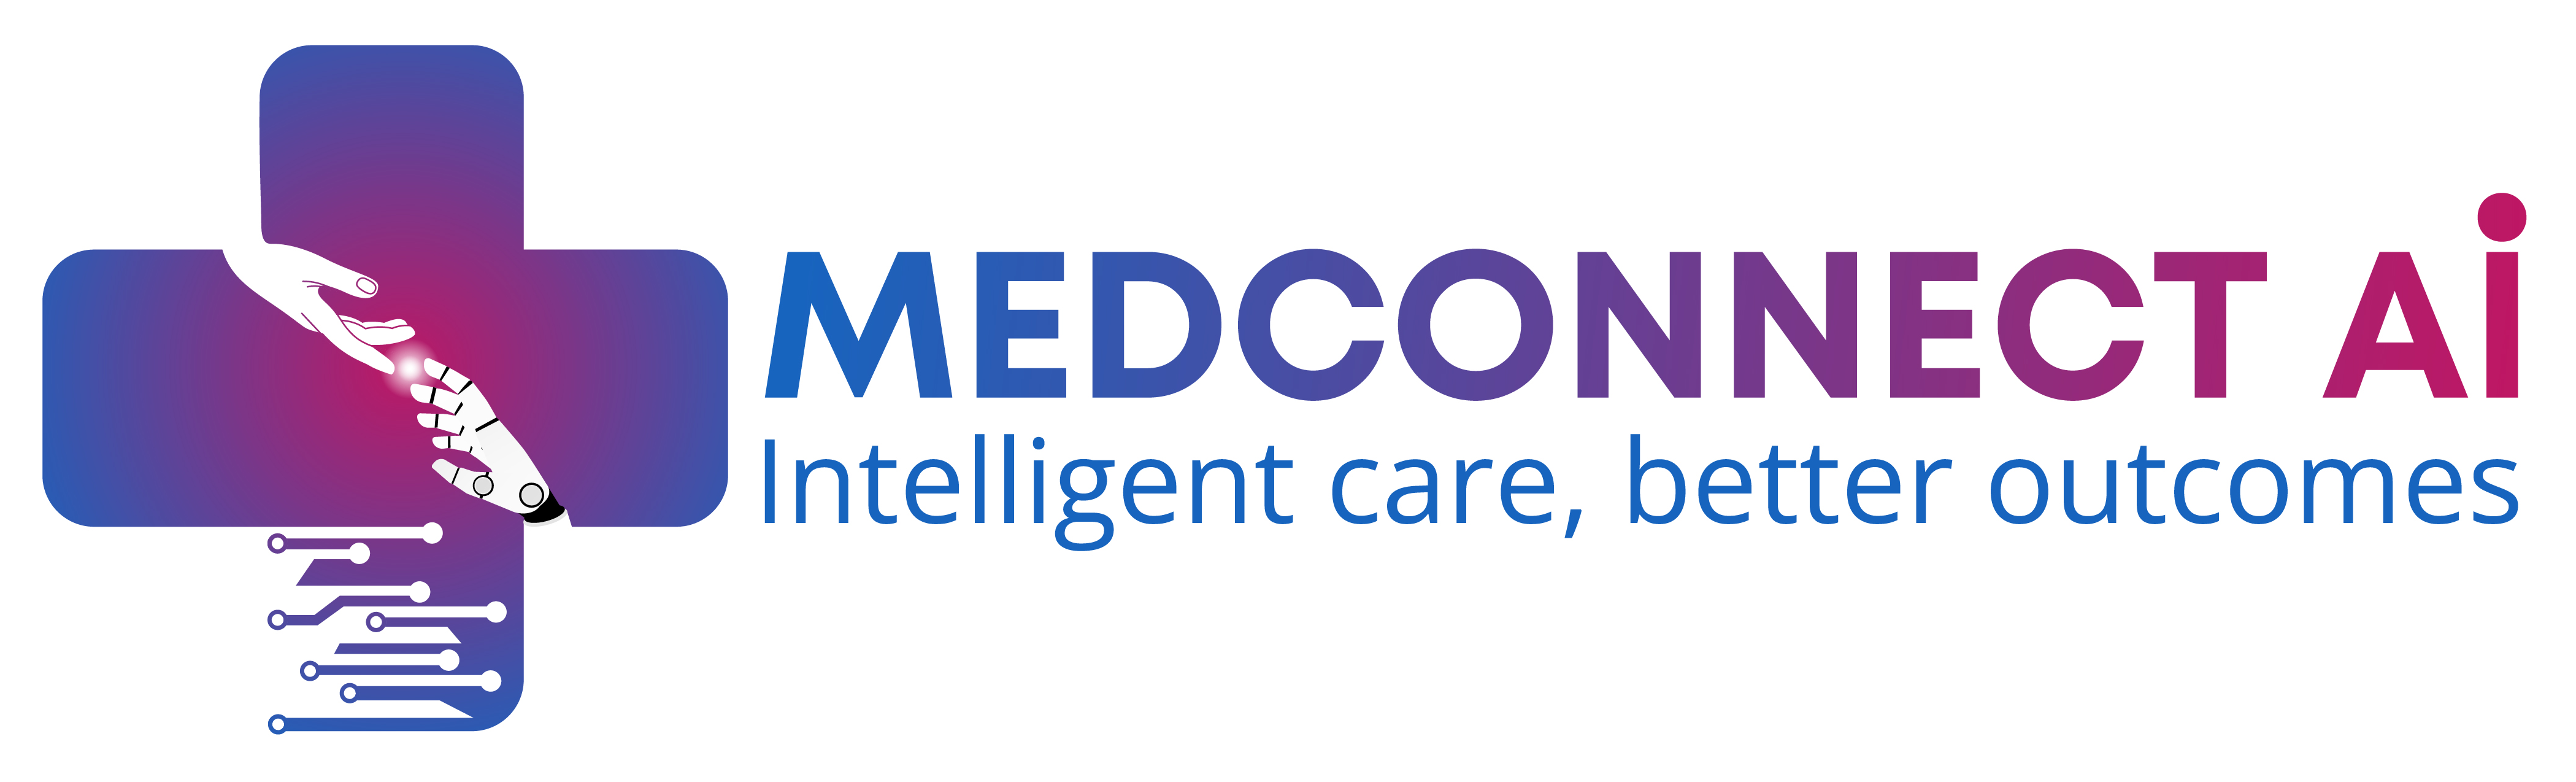 MedConnectAI